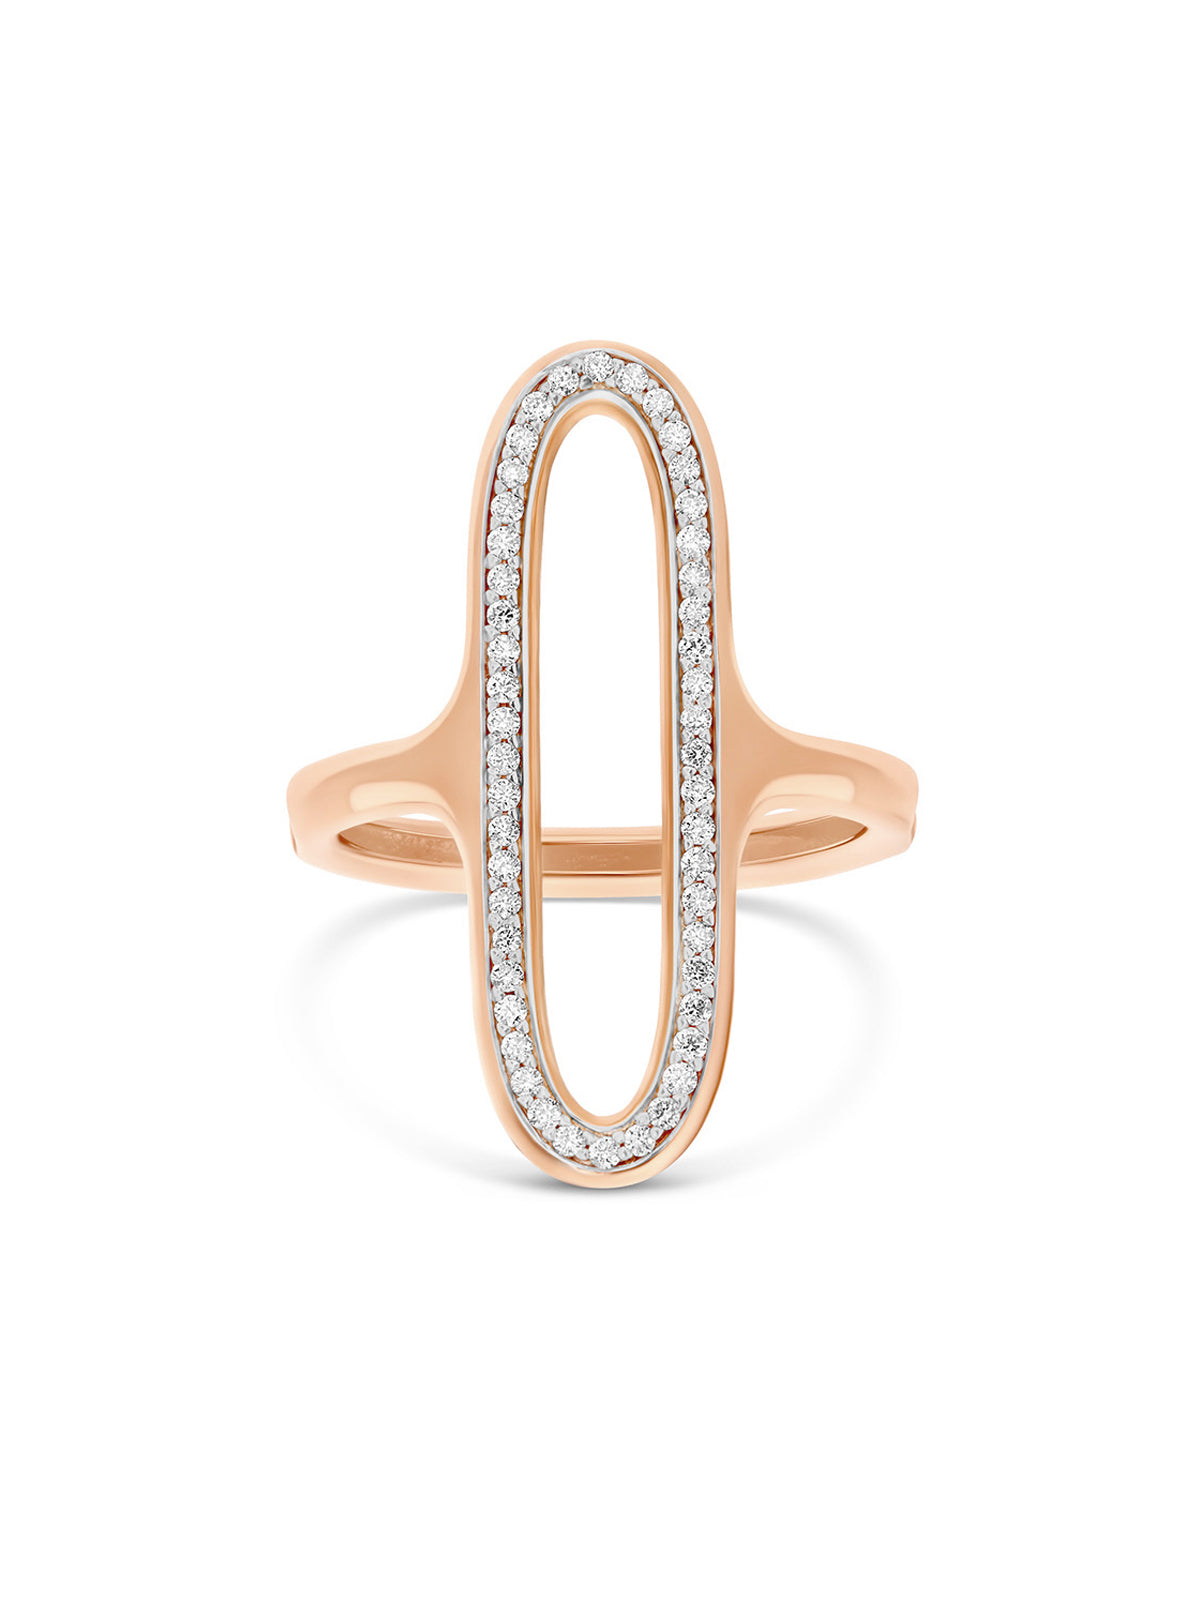 Ring “Libera” mit ovalem Element aus Roségold und Diamanten (groß)